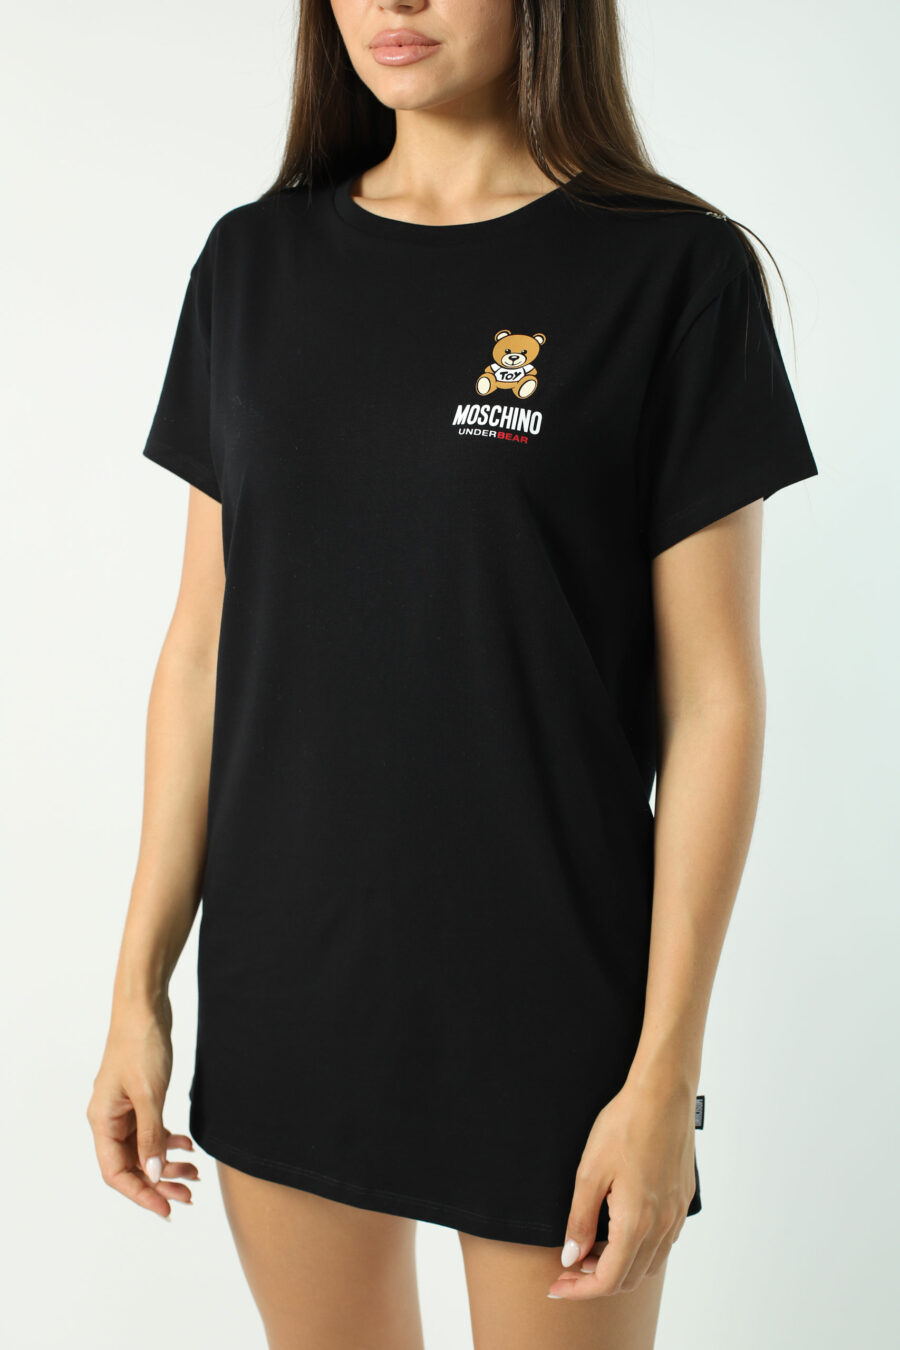 T-shirt maxi preta com mini logótipo de urso por baixo - Fotos 2799